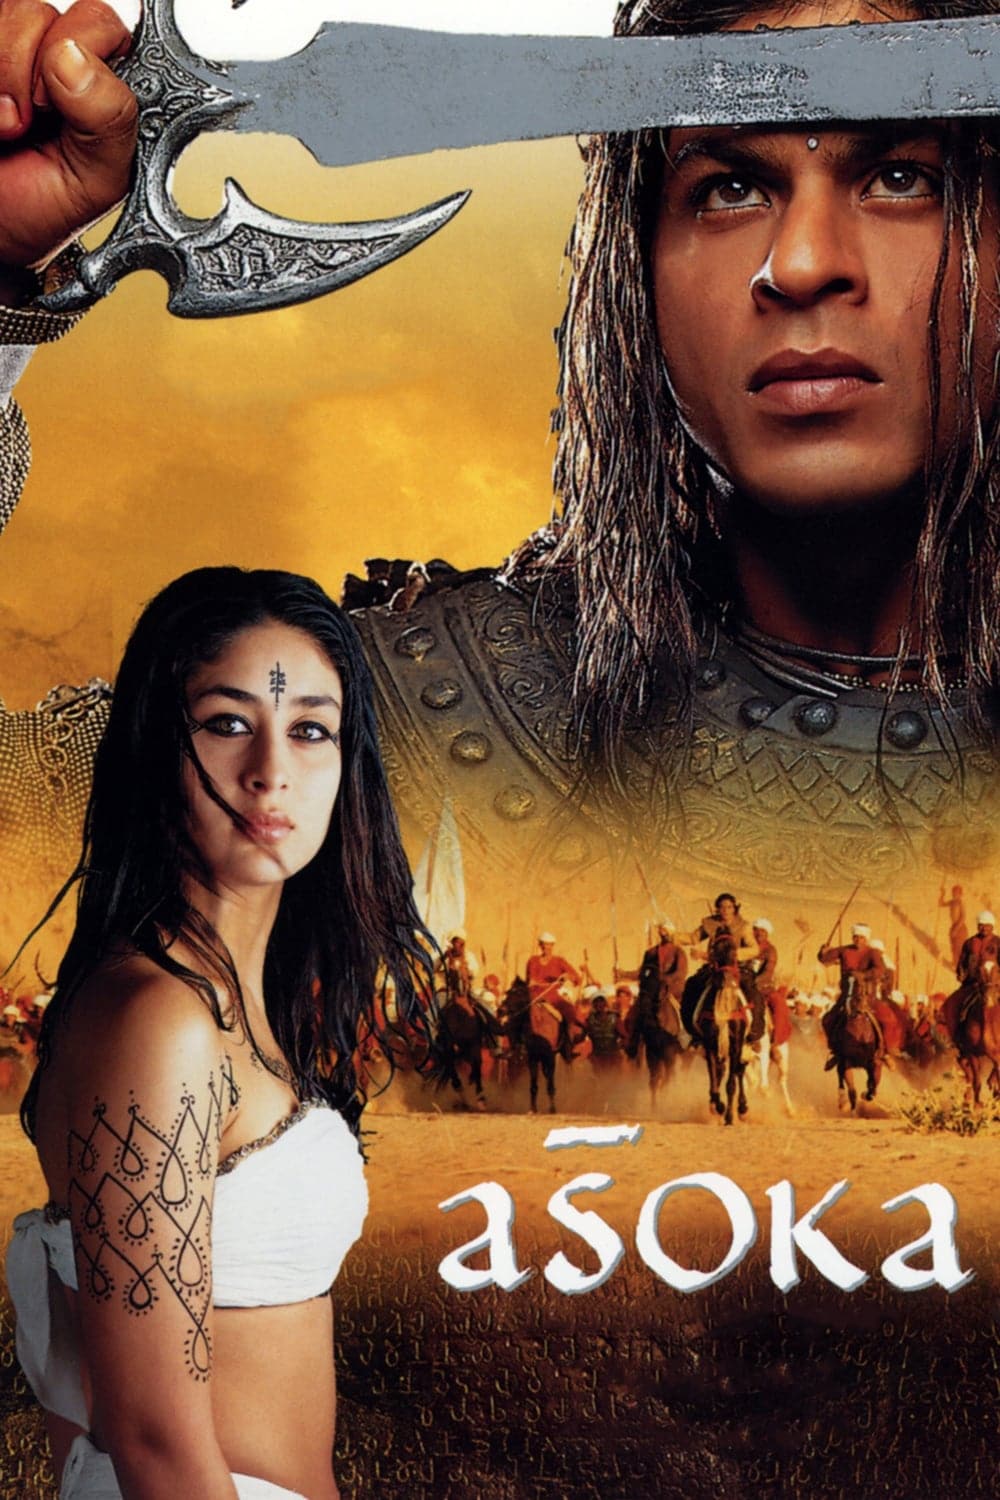 Poster for the movie "Aśoka"